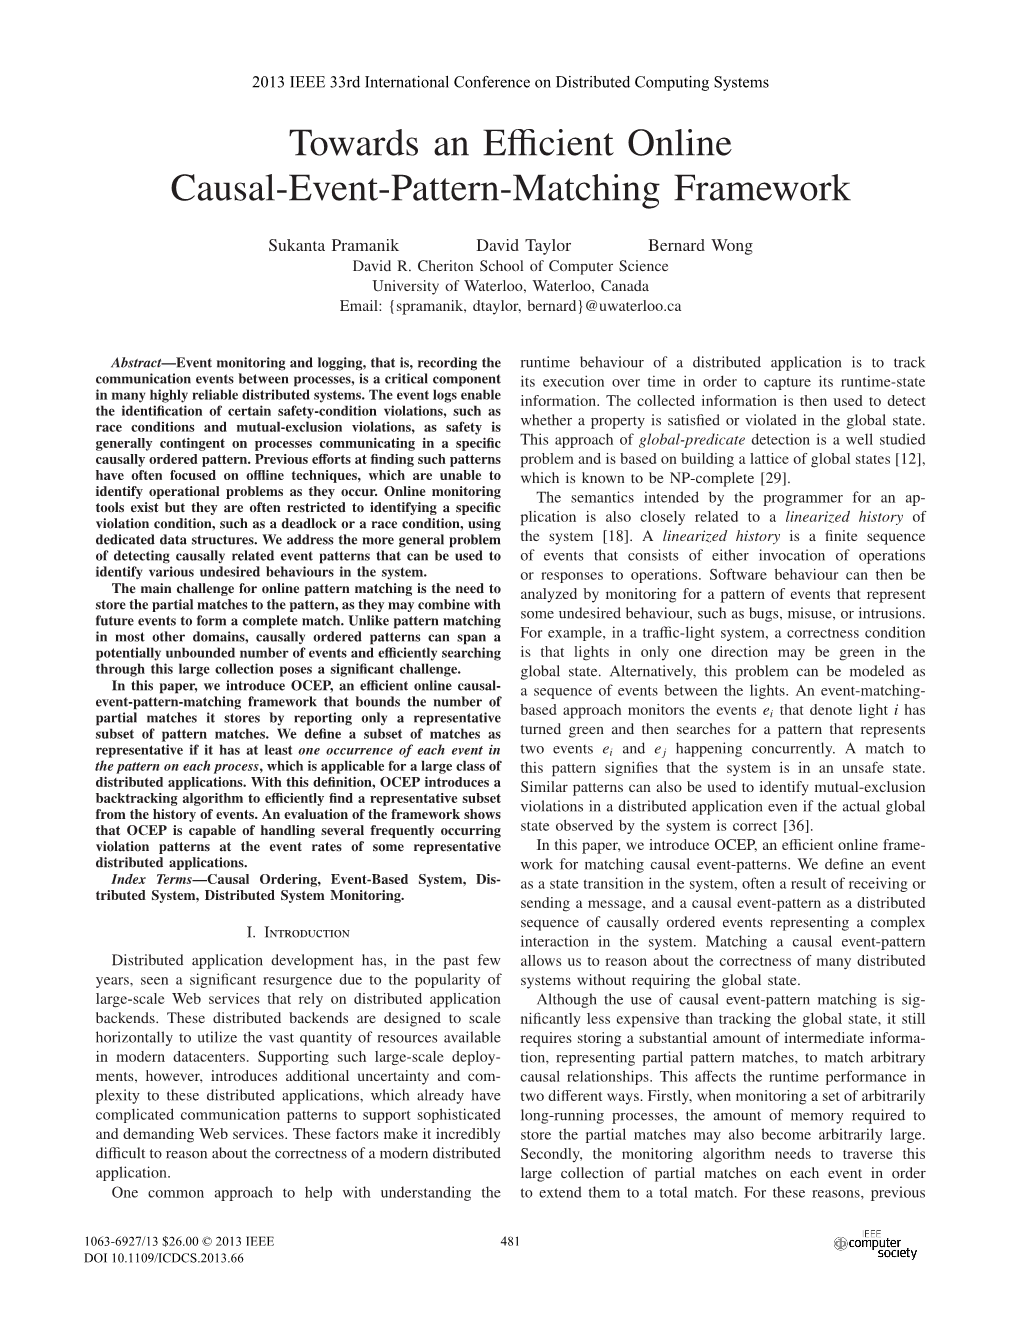 Towards an Efficient Online Causal-Event-Pattern-Matching Framework